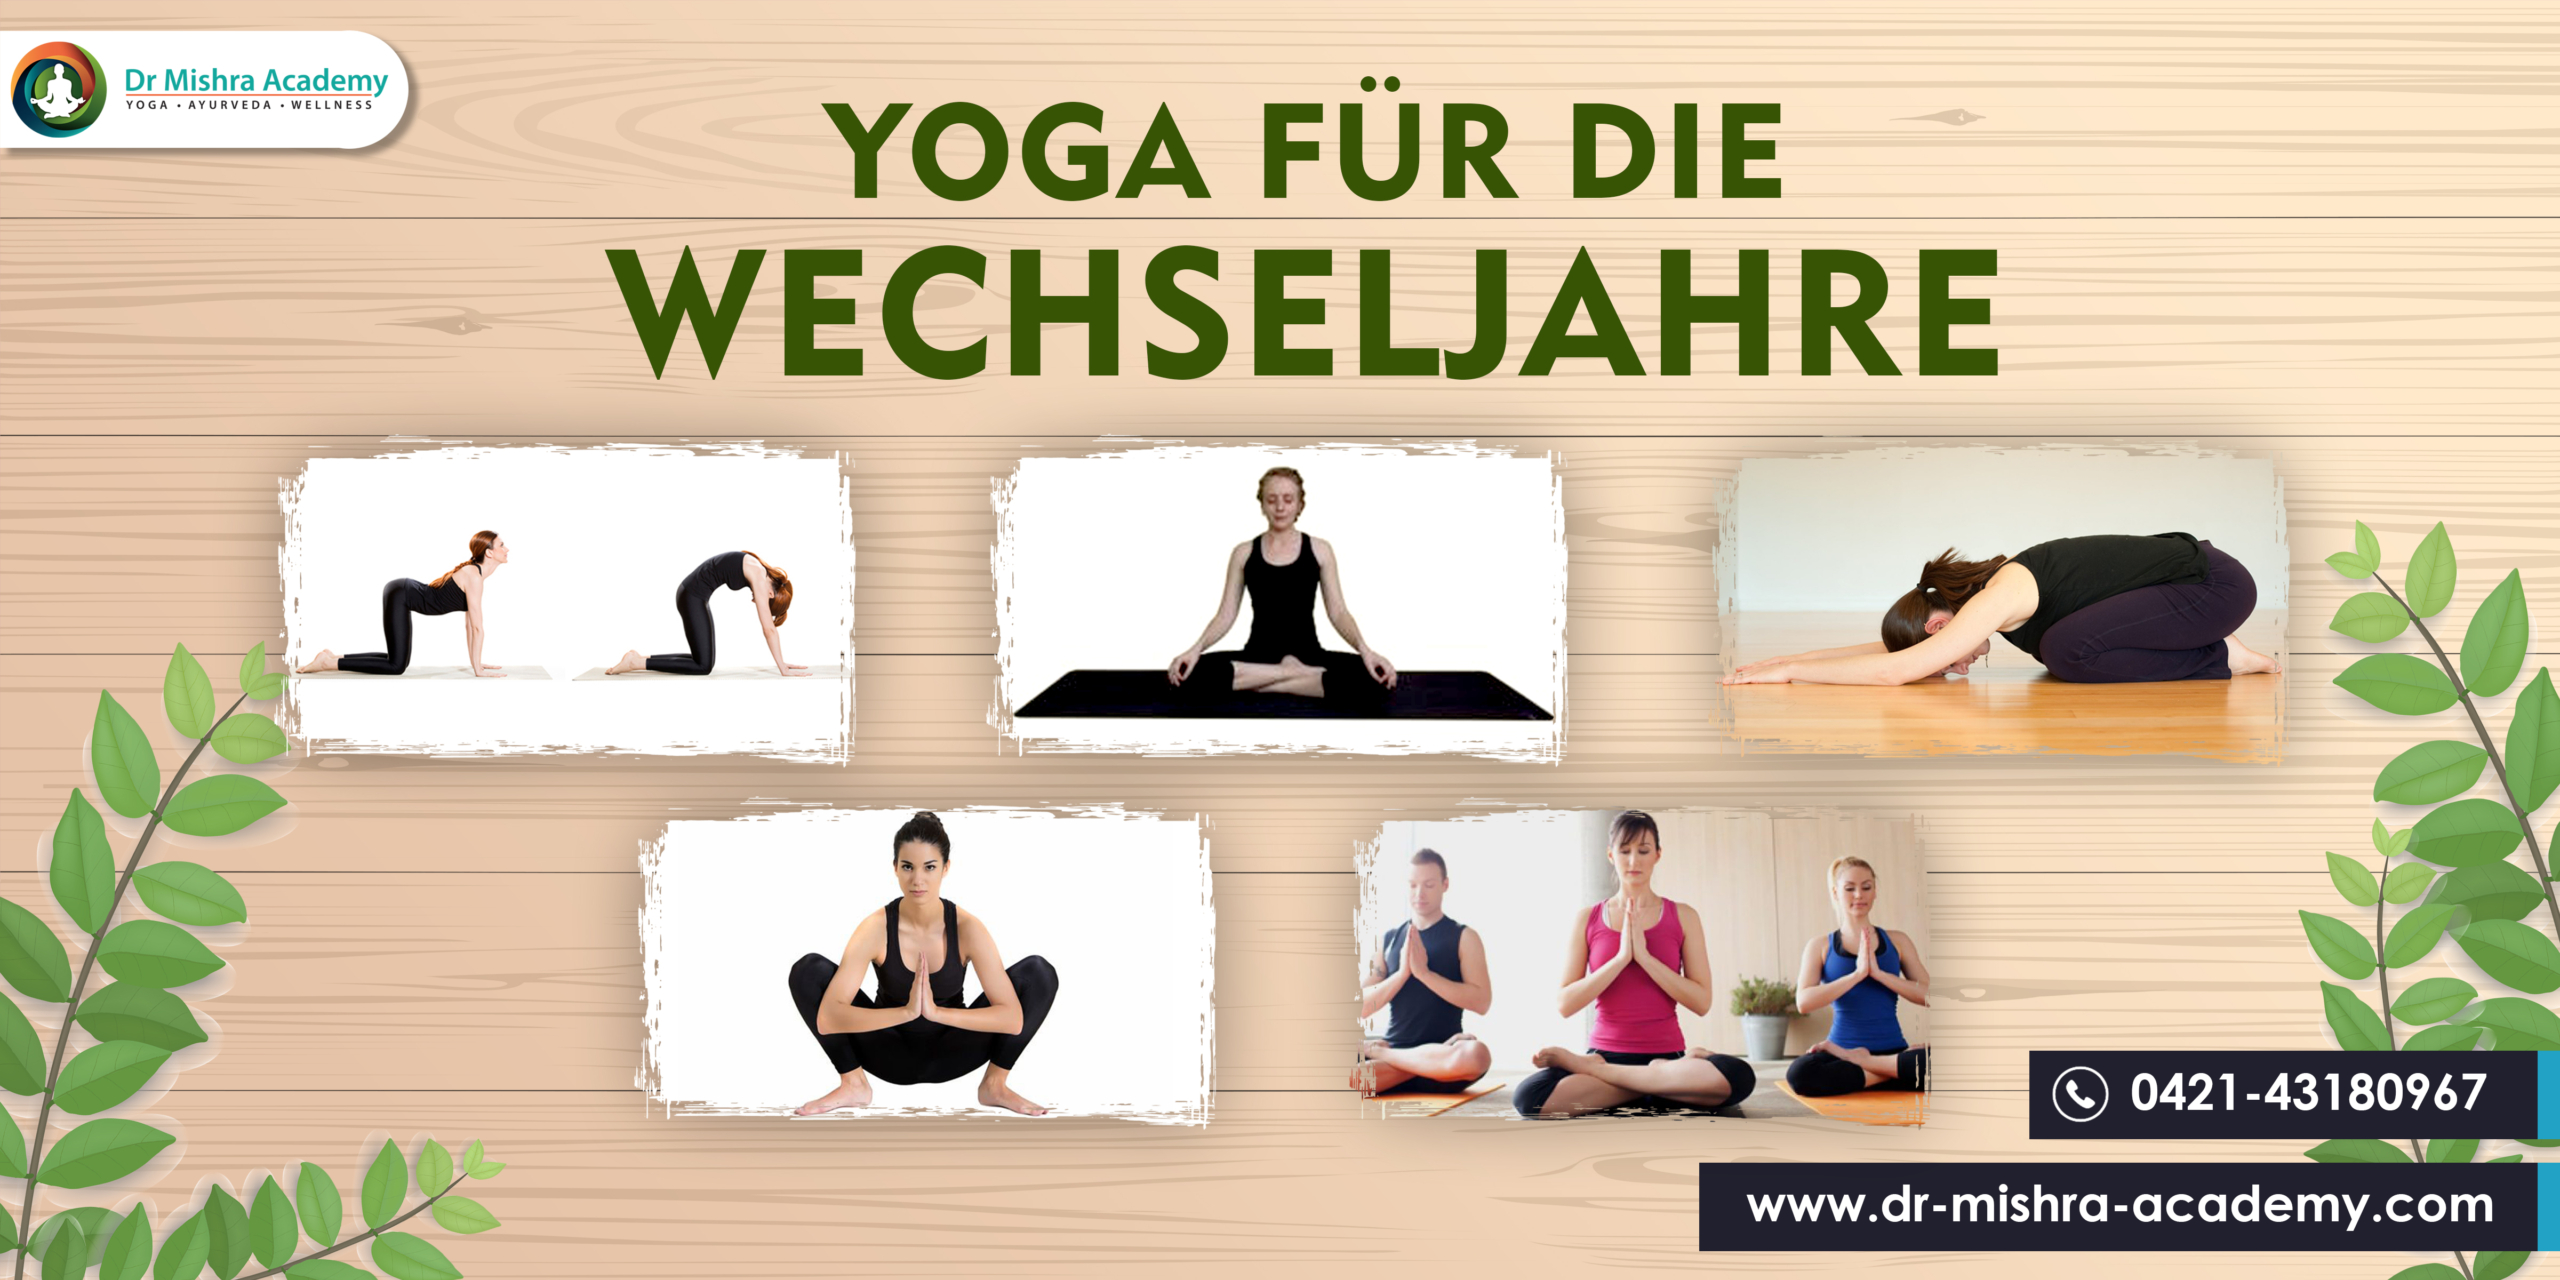 Yoga für die WechseljahreLeichter Hintergrund. Oben links ist das Logo der Dr. Mishra Academy und unten 5 Asanas und eine Meditations-Asana. Beide Seiten grüne Pflanzen und unten rechts die Website der Dr. Mishra Akademie Bremen und Hamburg.